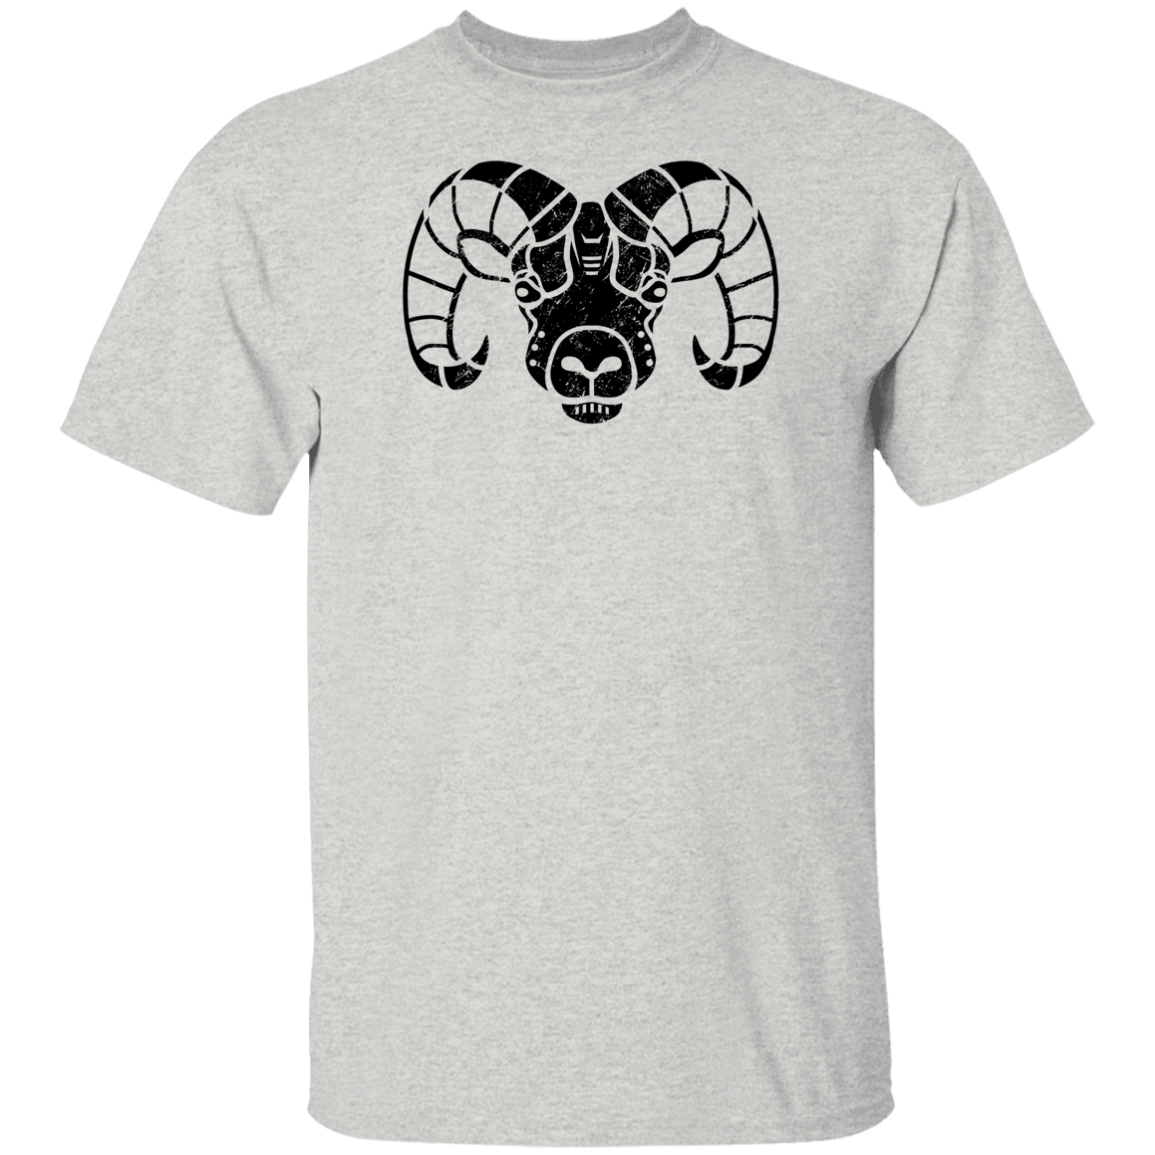 Black Distressed Emblem T-Shirt for Kids (Big Horn Sheep/Matterhorn)